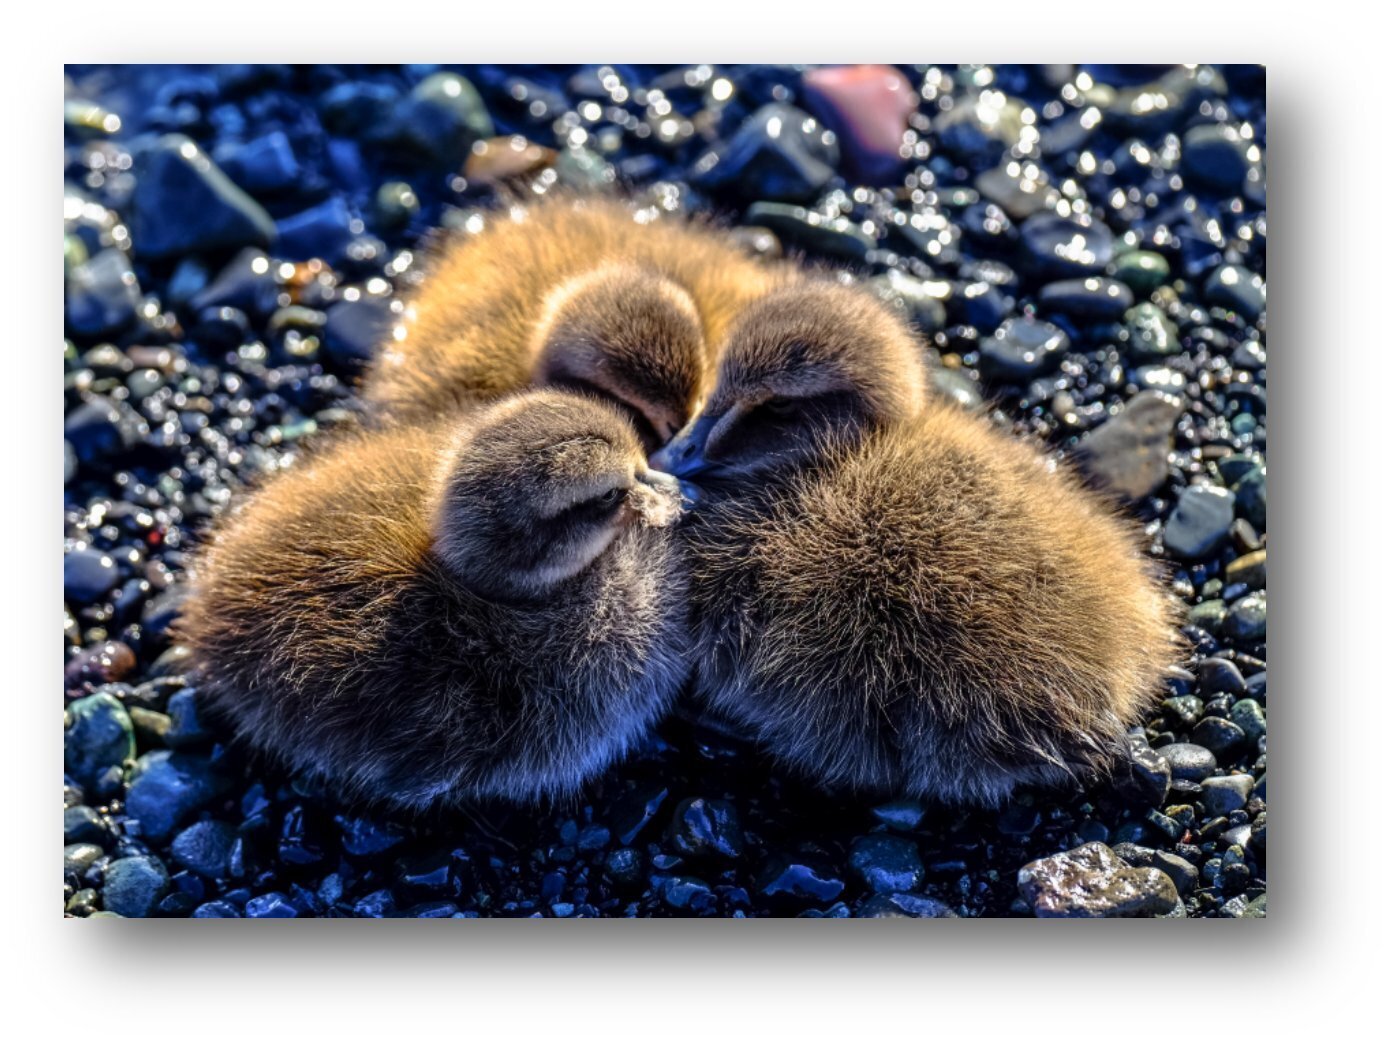 Baby ducks huddling